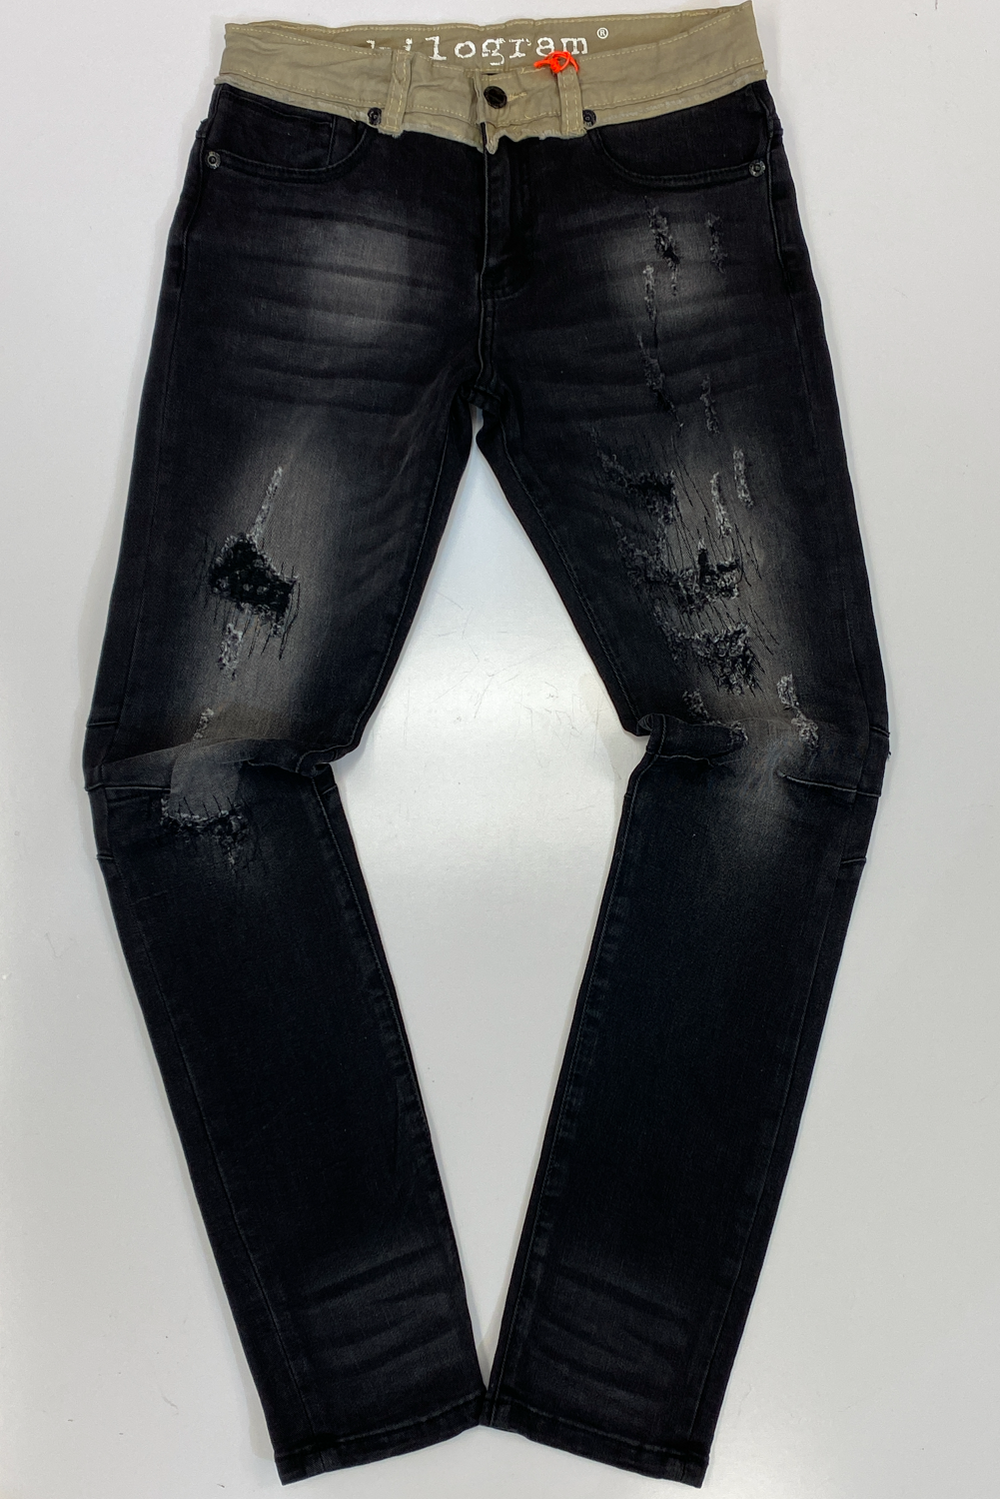 Kilogram- twill contrast biker jeans